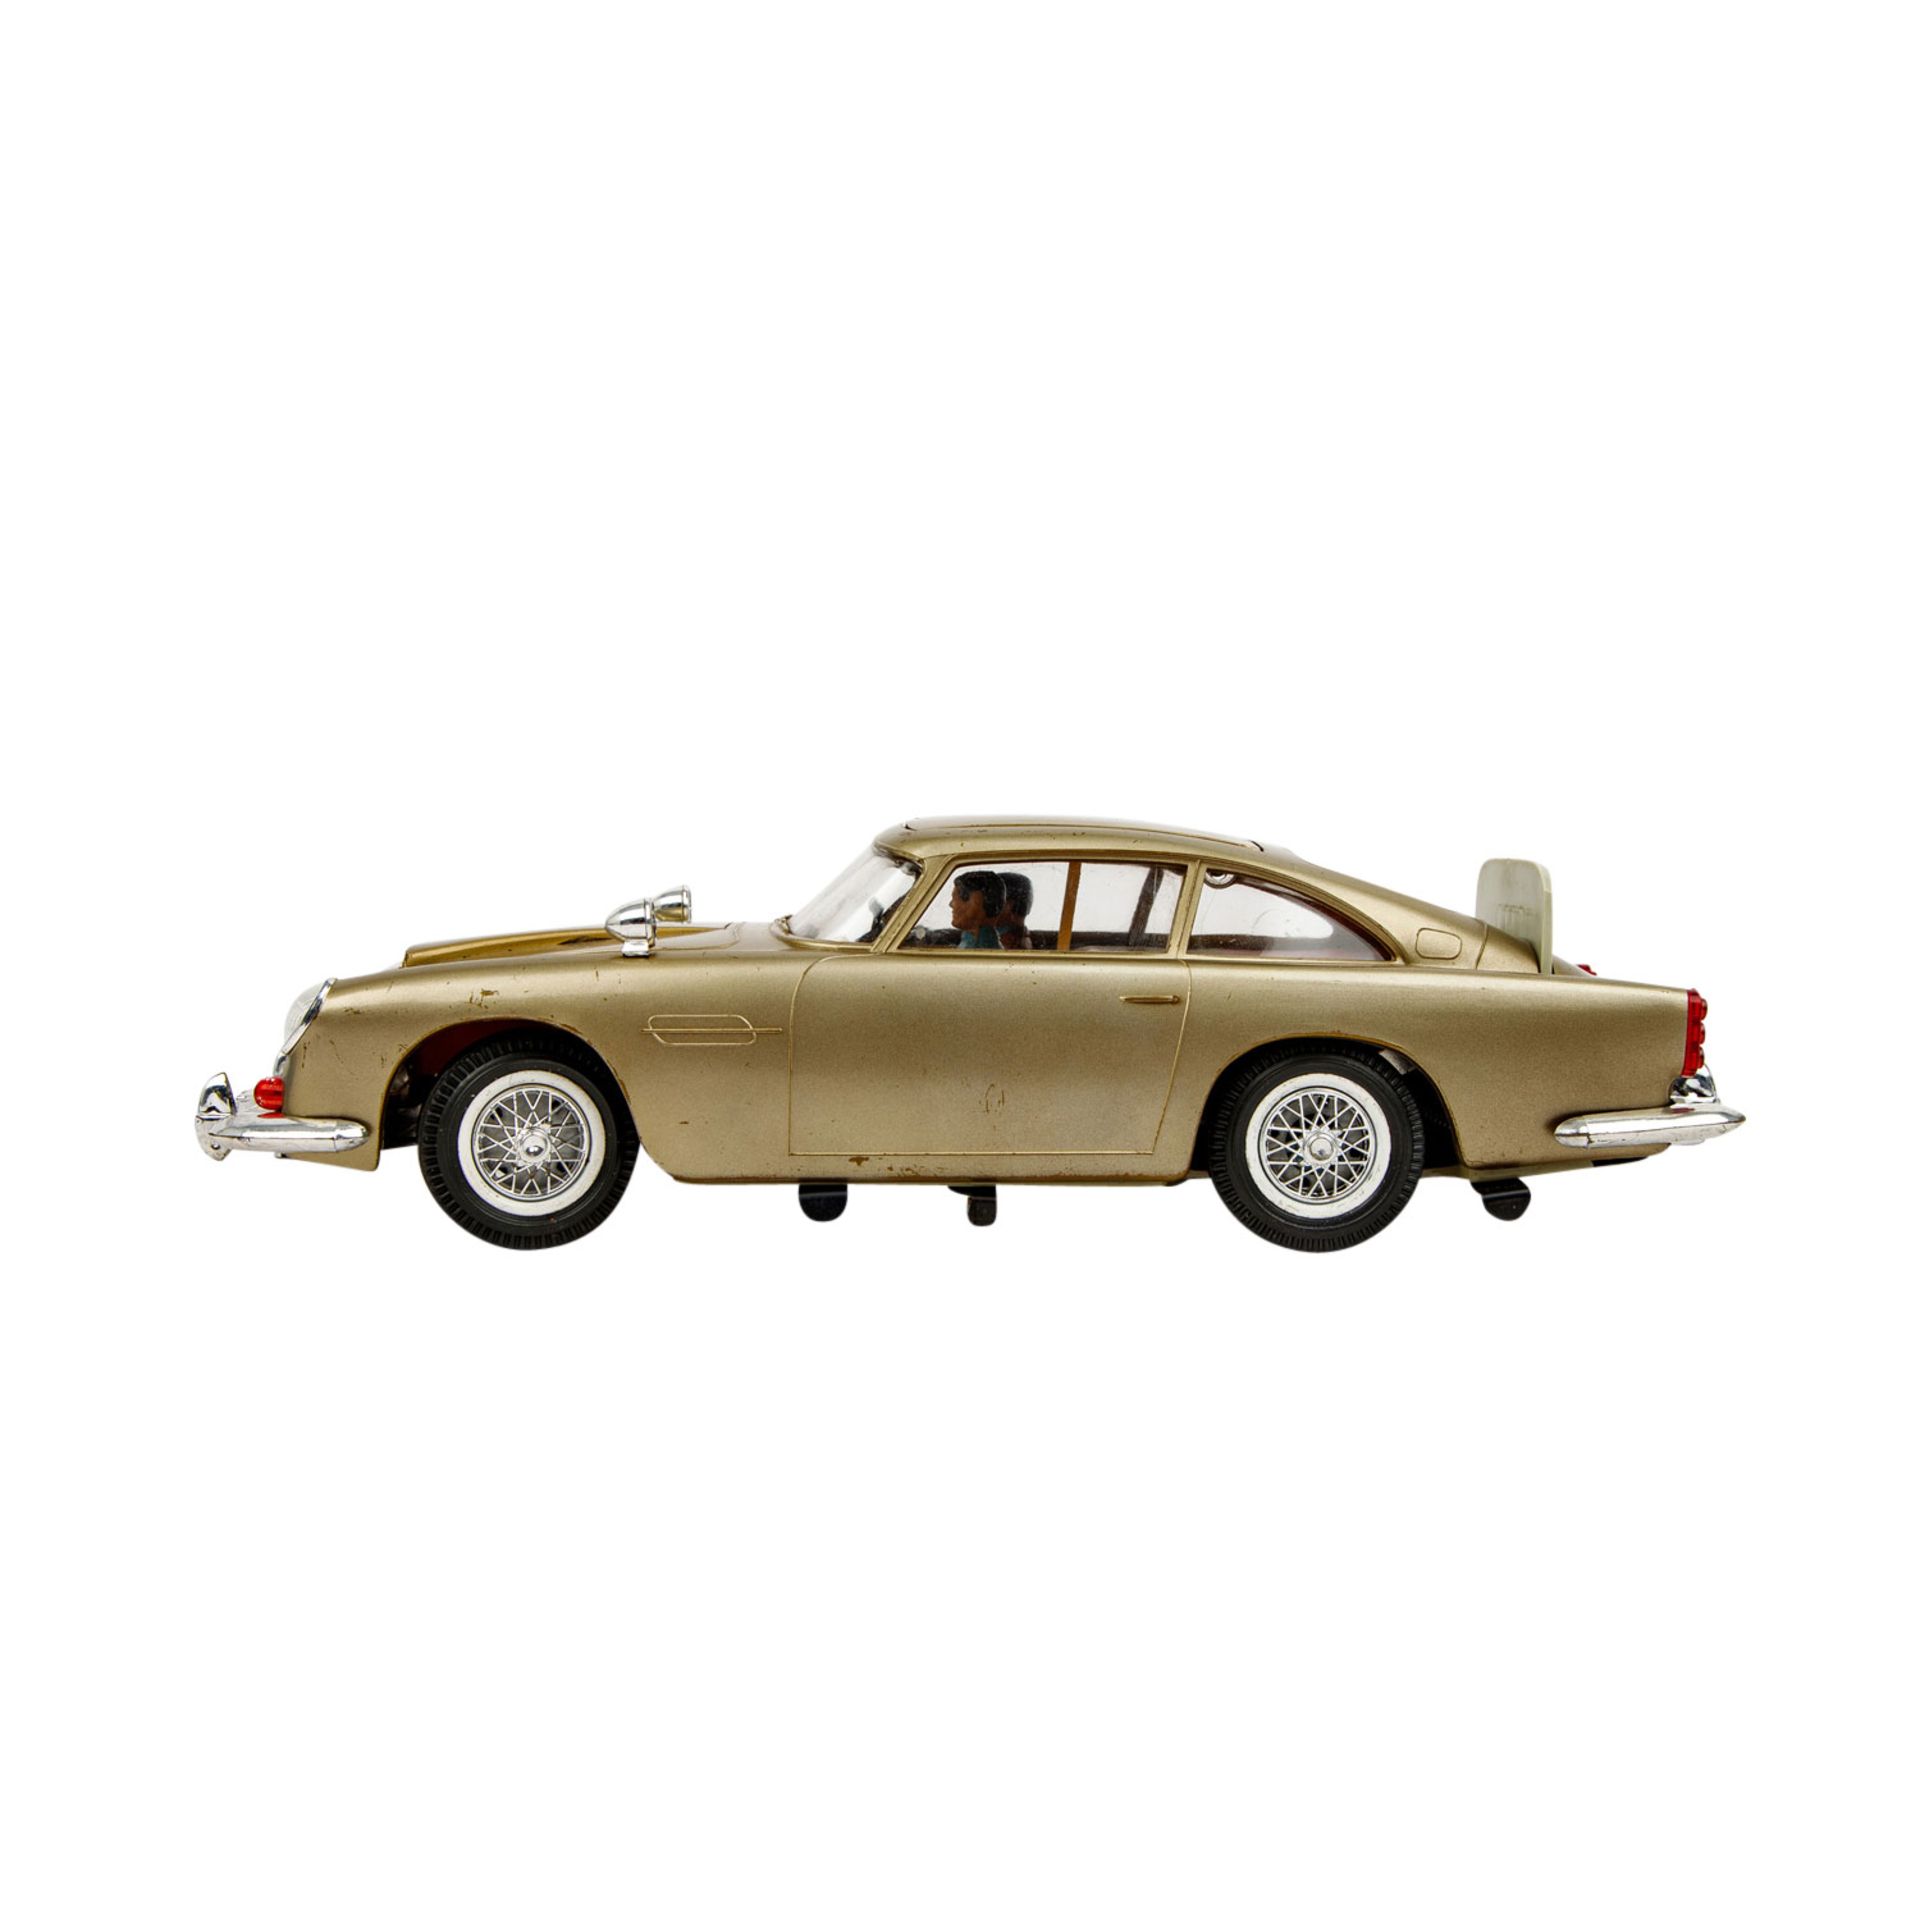 GAMA Modellfahrzeug Nr. 4900 "James Bond 007 Goldfinger", 1960er Jahre, - Bild 3 aus 9